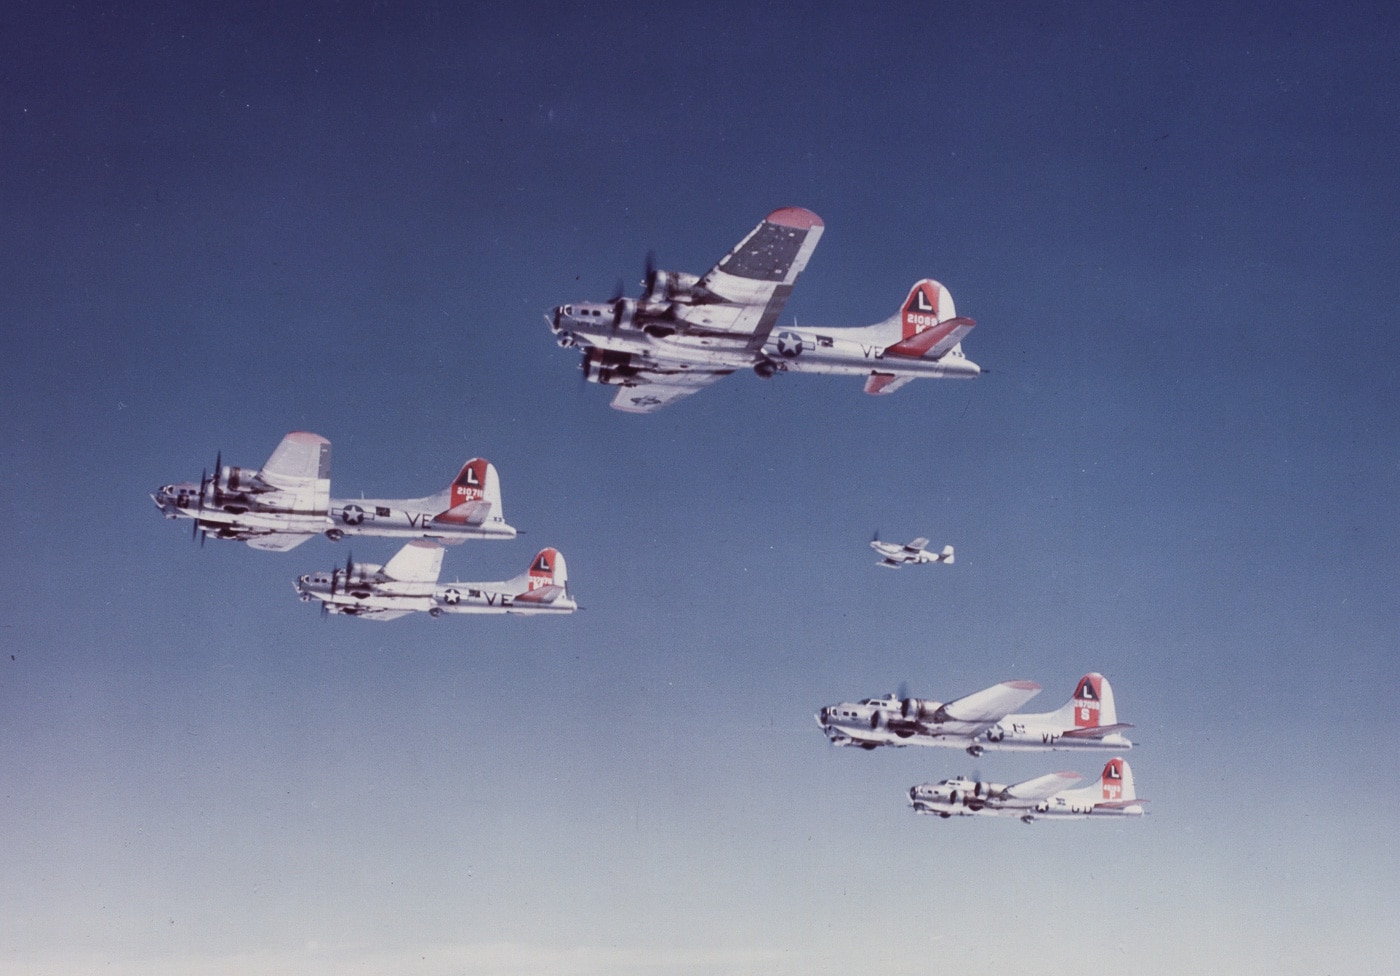 p-51 escorting b-17 bombers